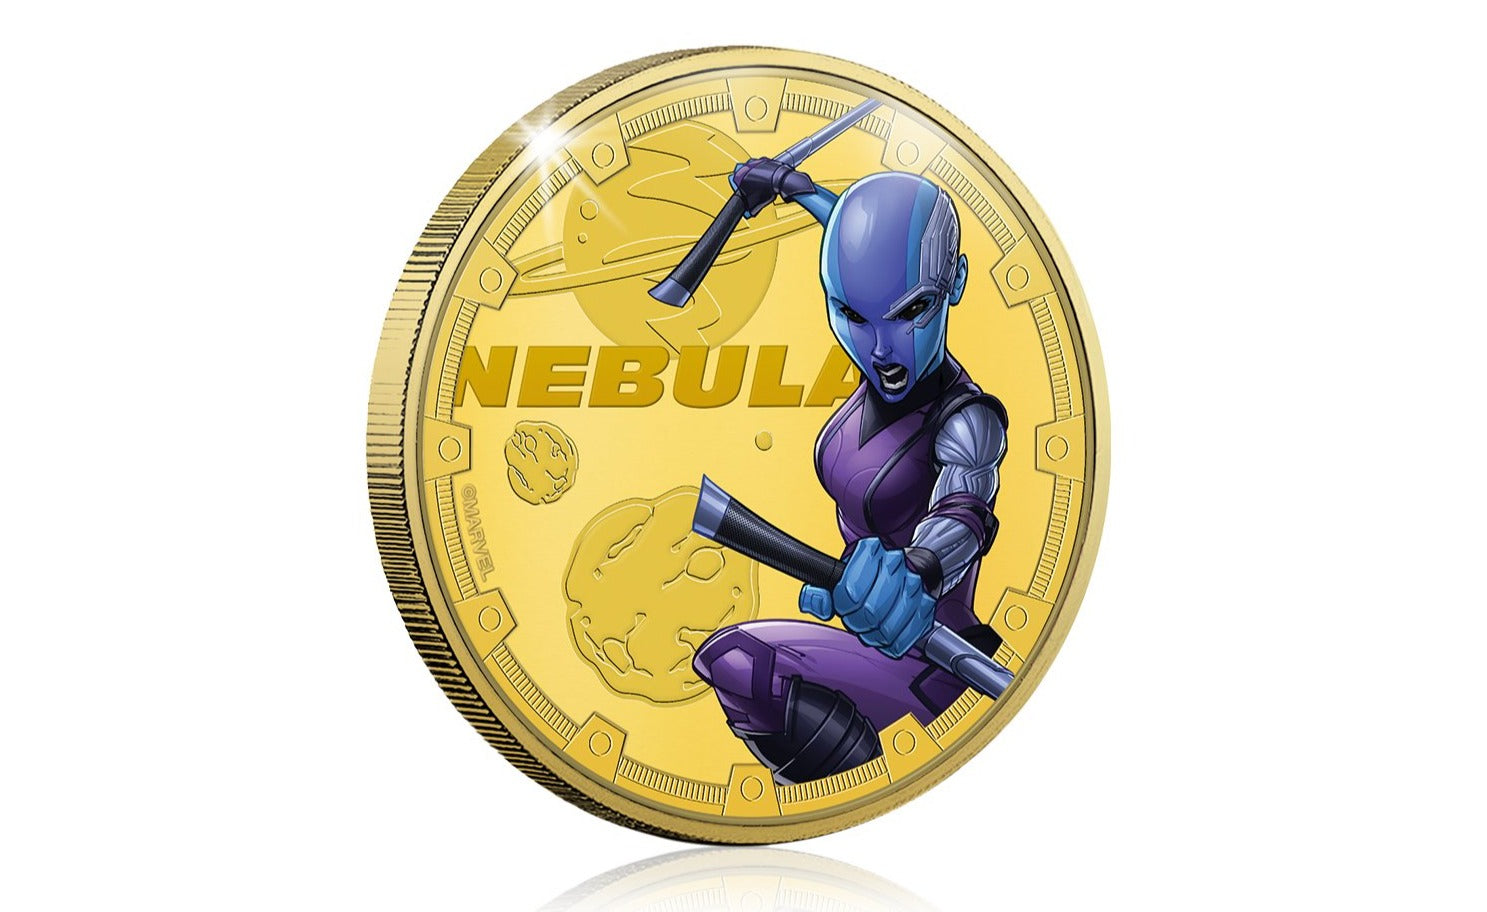 Marvel Guardianes de la Galaxia - Nebula - Moneda / Medalla conmemorativa acuñada con baño en Oro 24 quilates y coloreada a 4 colores - 44mm